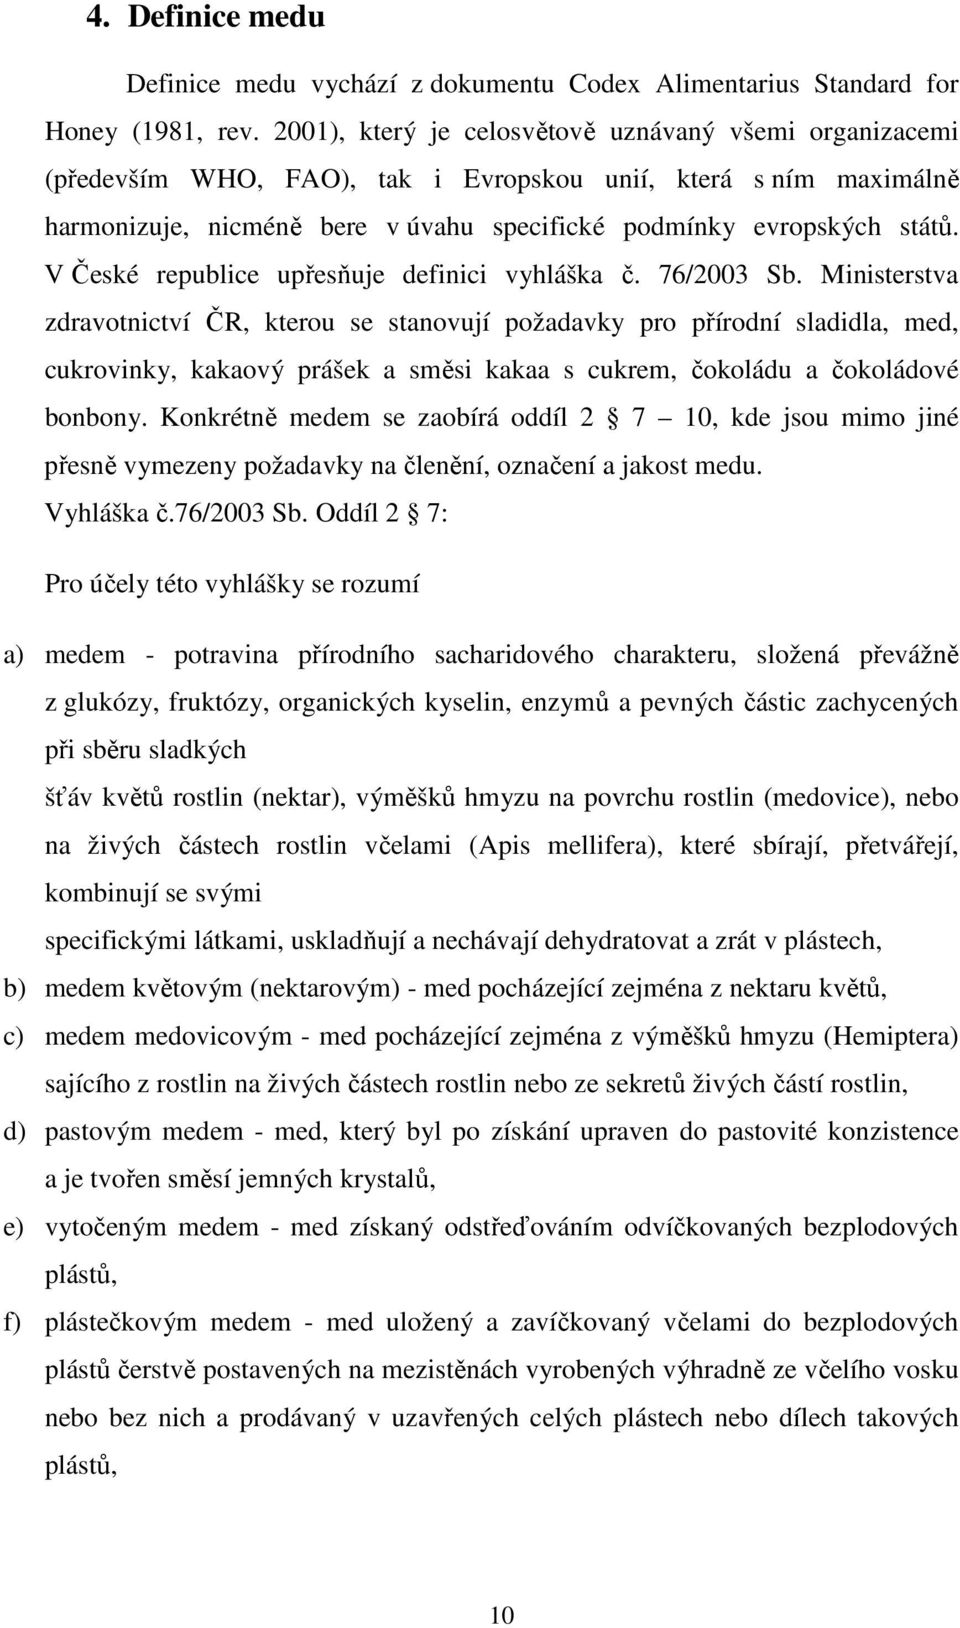 V České republice upřesňuje definici vyhláška č. 76/2003 Sb.